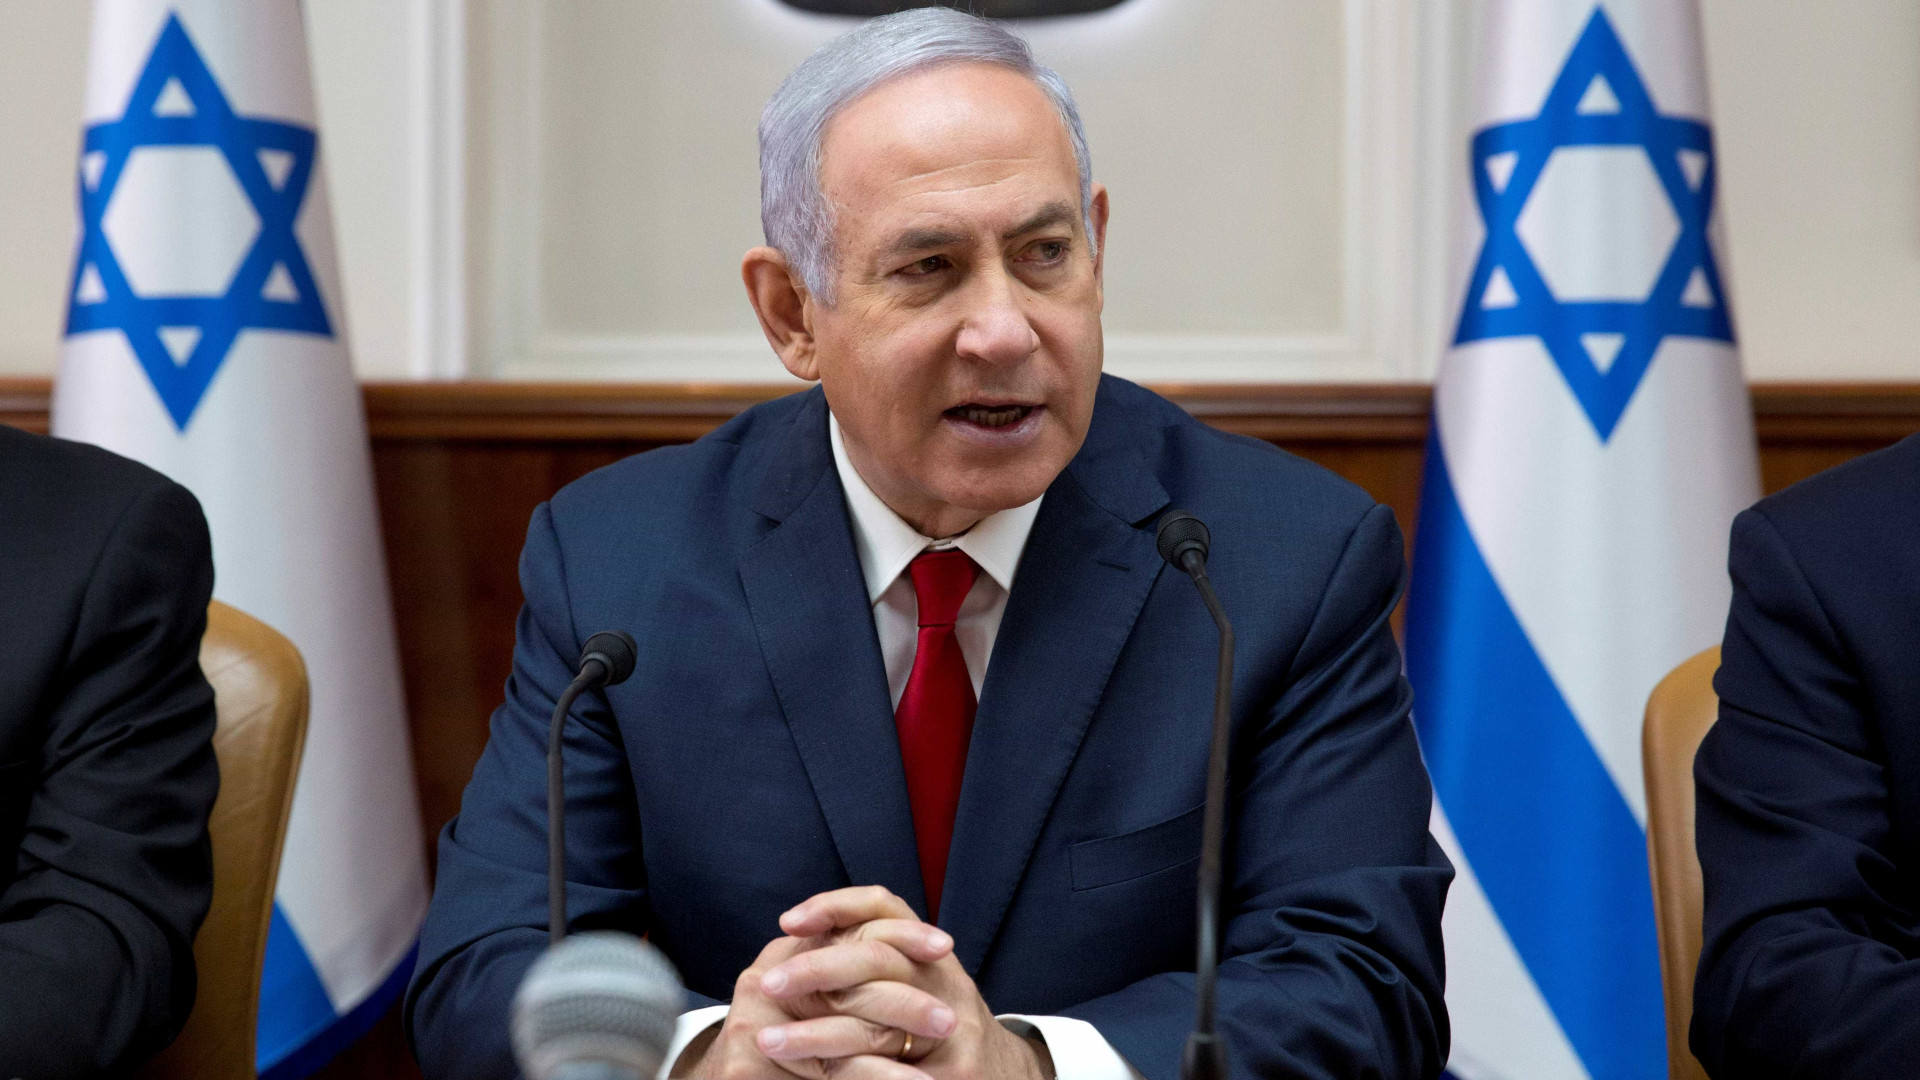 Netanyahu é indiciado por corrupção, fraude e abuso de confiança